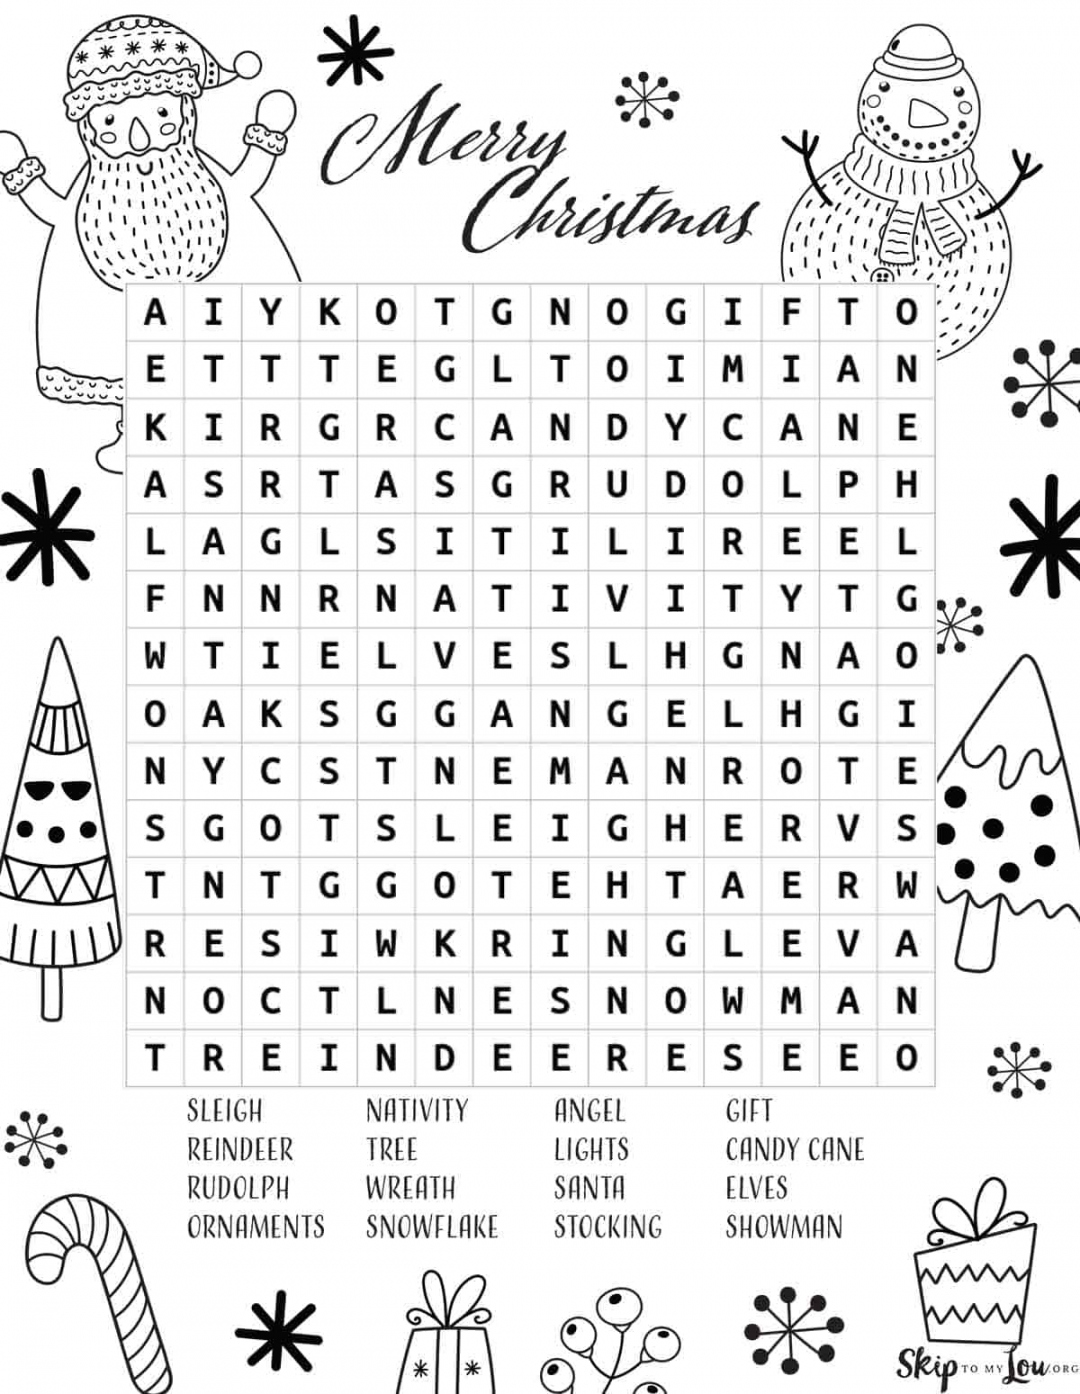 Holiday Word Search Printable Free - Printable - Christmas Word Search  Skip To My Lou